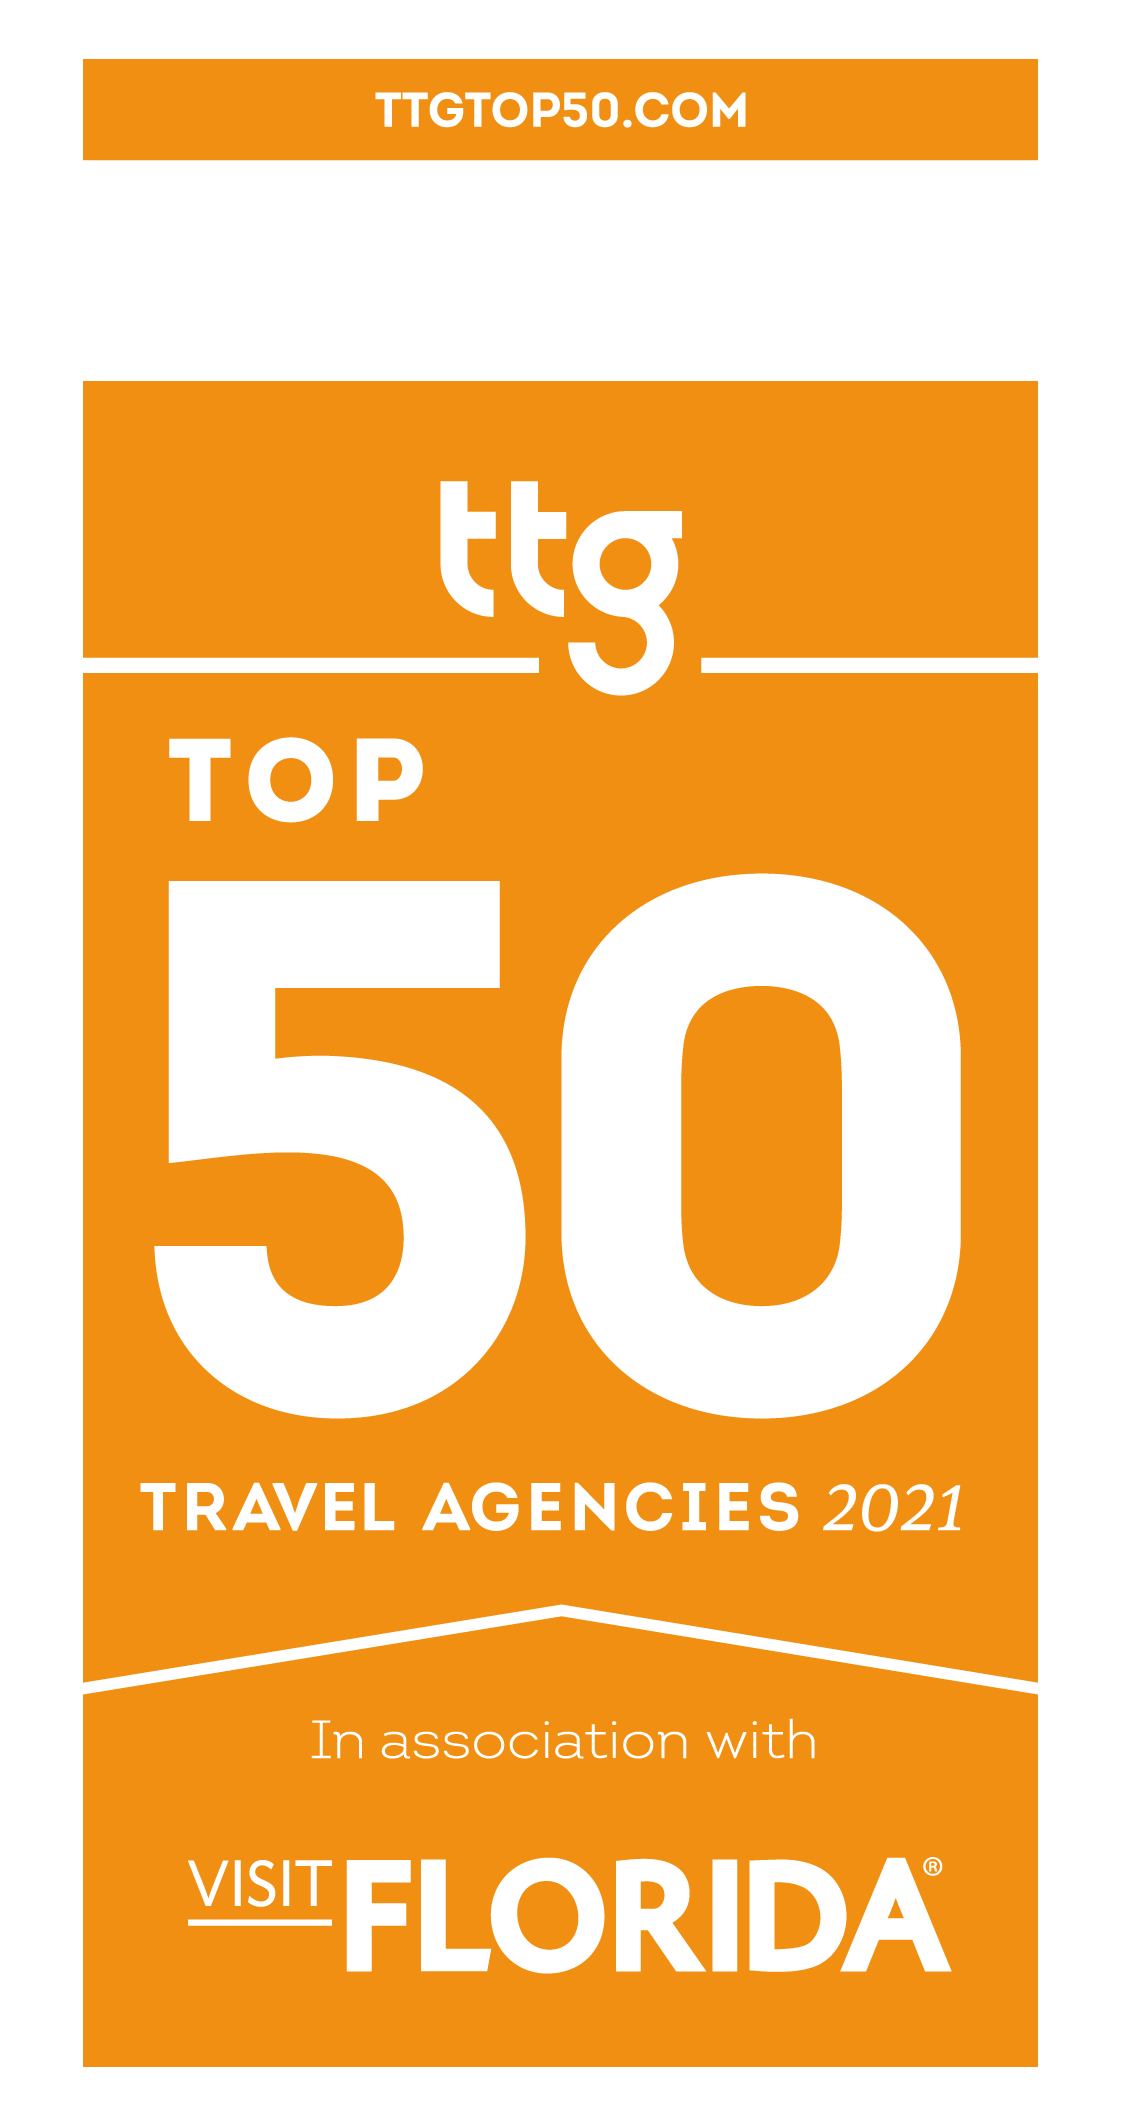 TTG Top Ocean Cruise Agency 2021